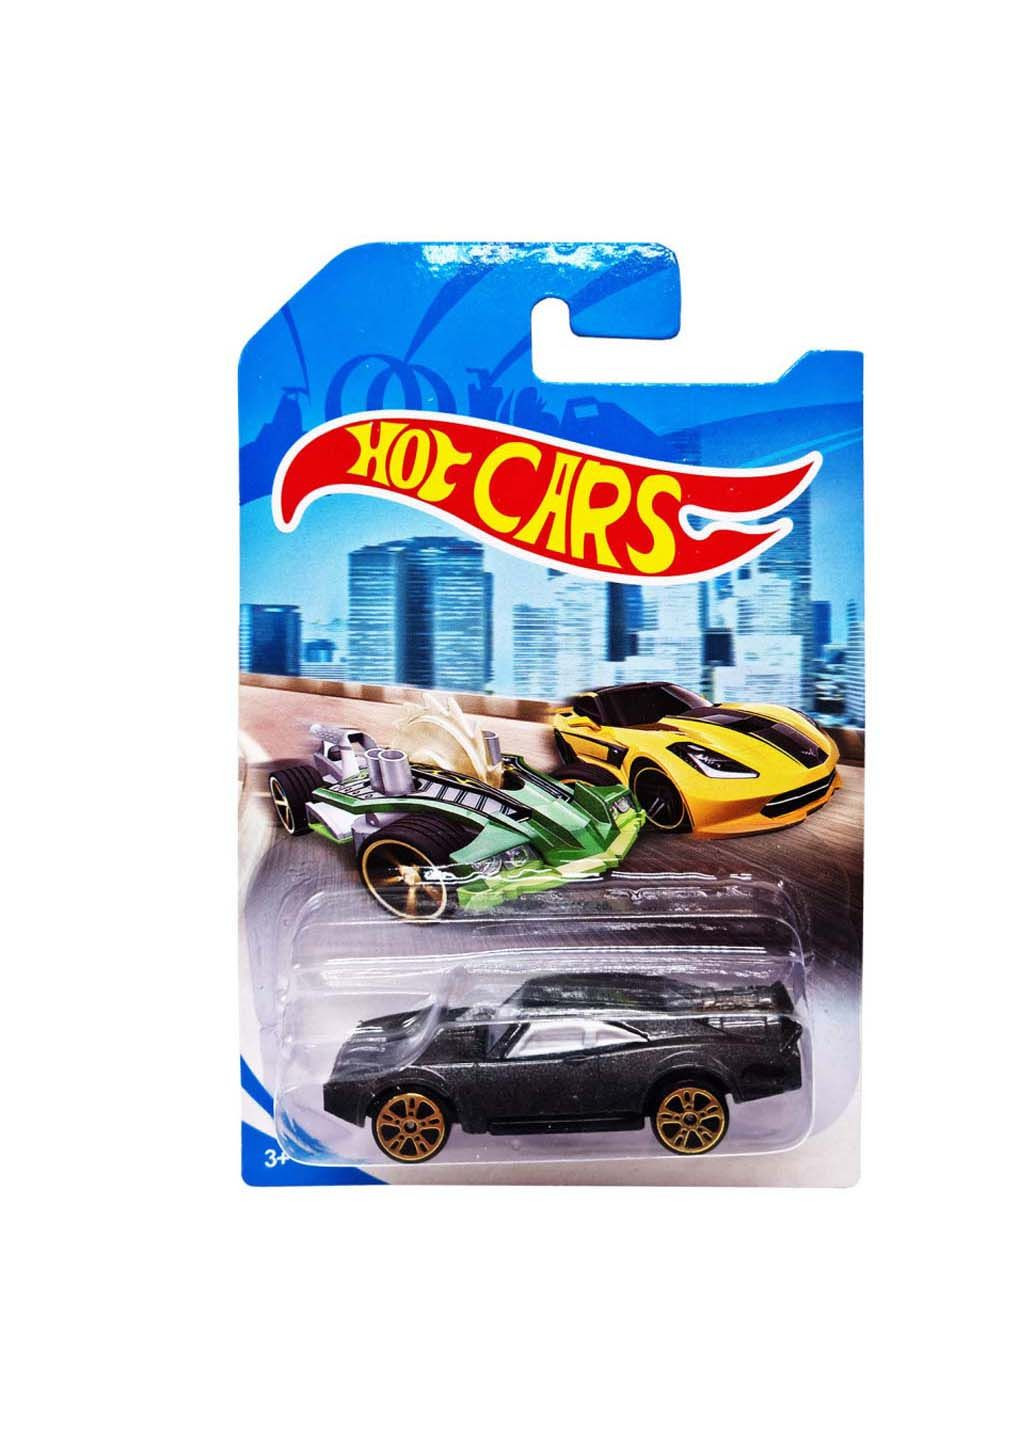 Машинка игровая металлическая Hot cars 324-9 масштаб 1:64 Bambi (293060874)